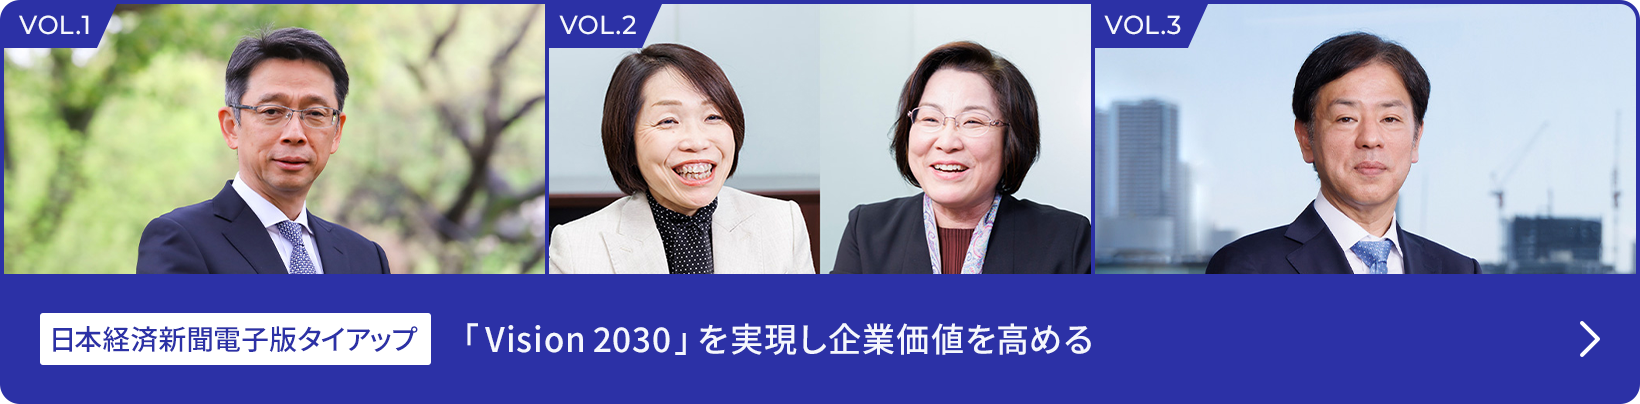 日本経済新聞電子版タイアップ 「Vision 2030」を実現し企業価値を高める